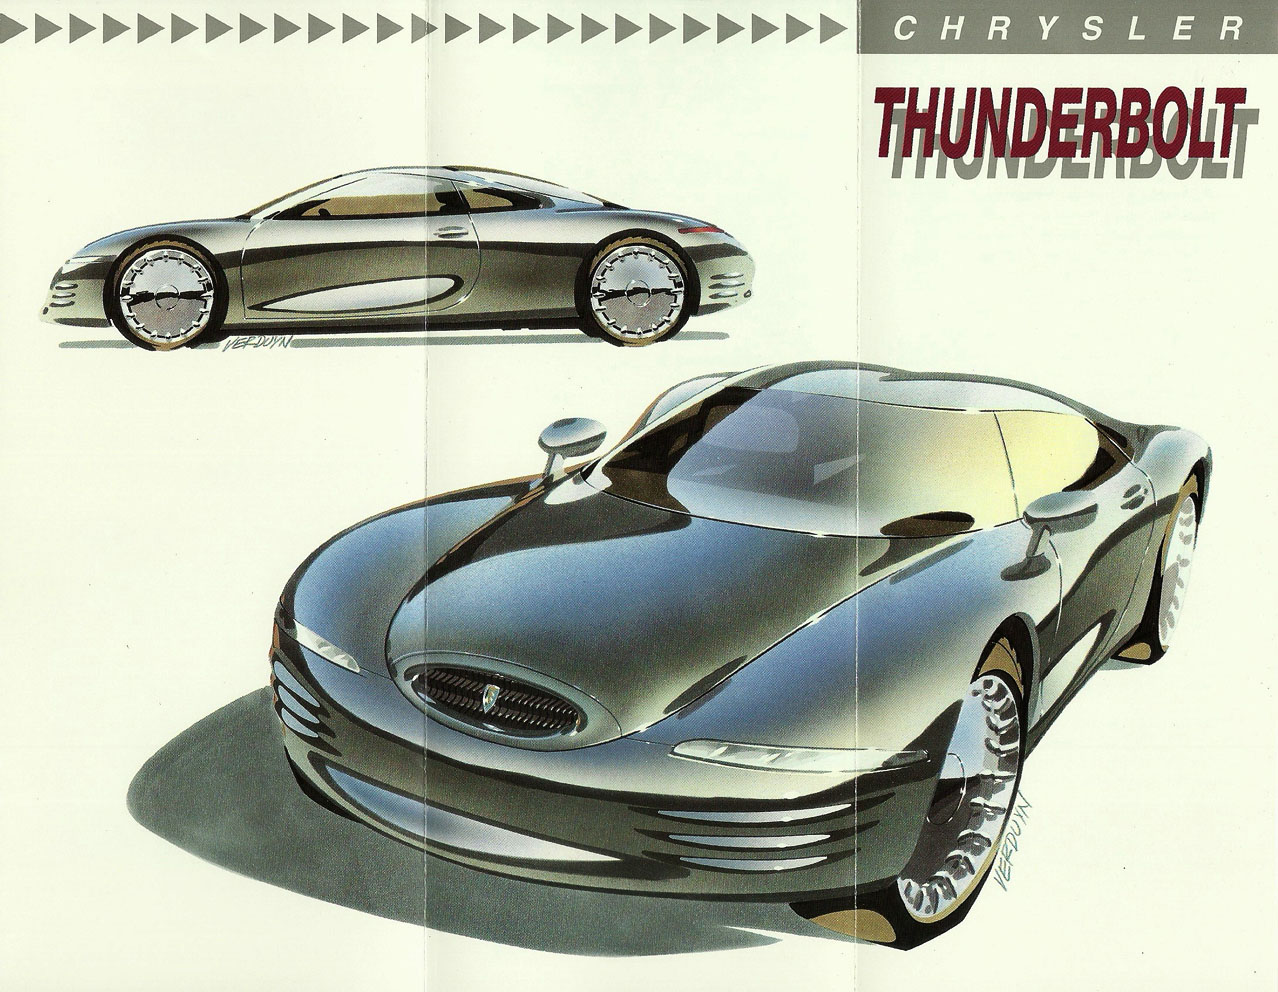 1993_Chrysler_Thunderbolt_Concept-02-03-04